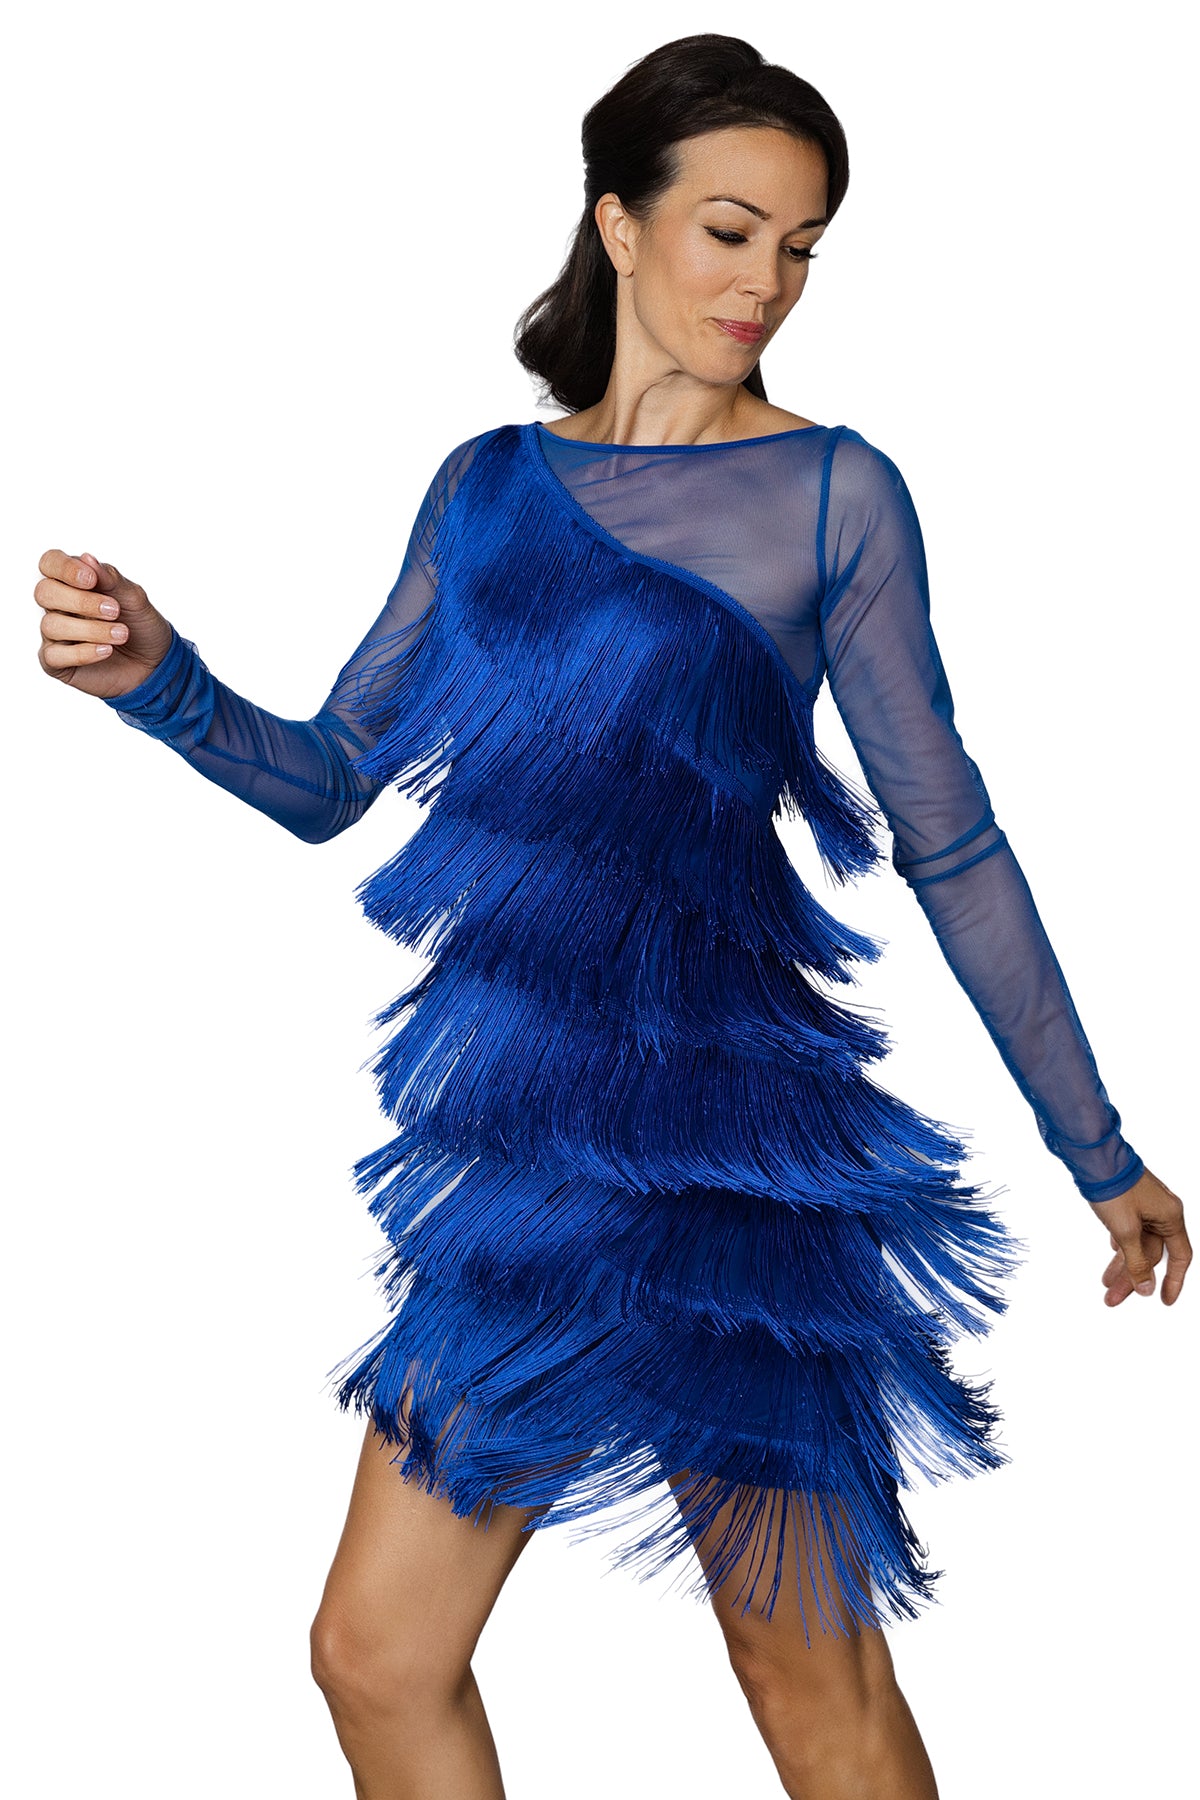 Ladies' blue fringe Latin dancing dress